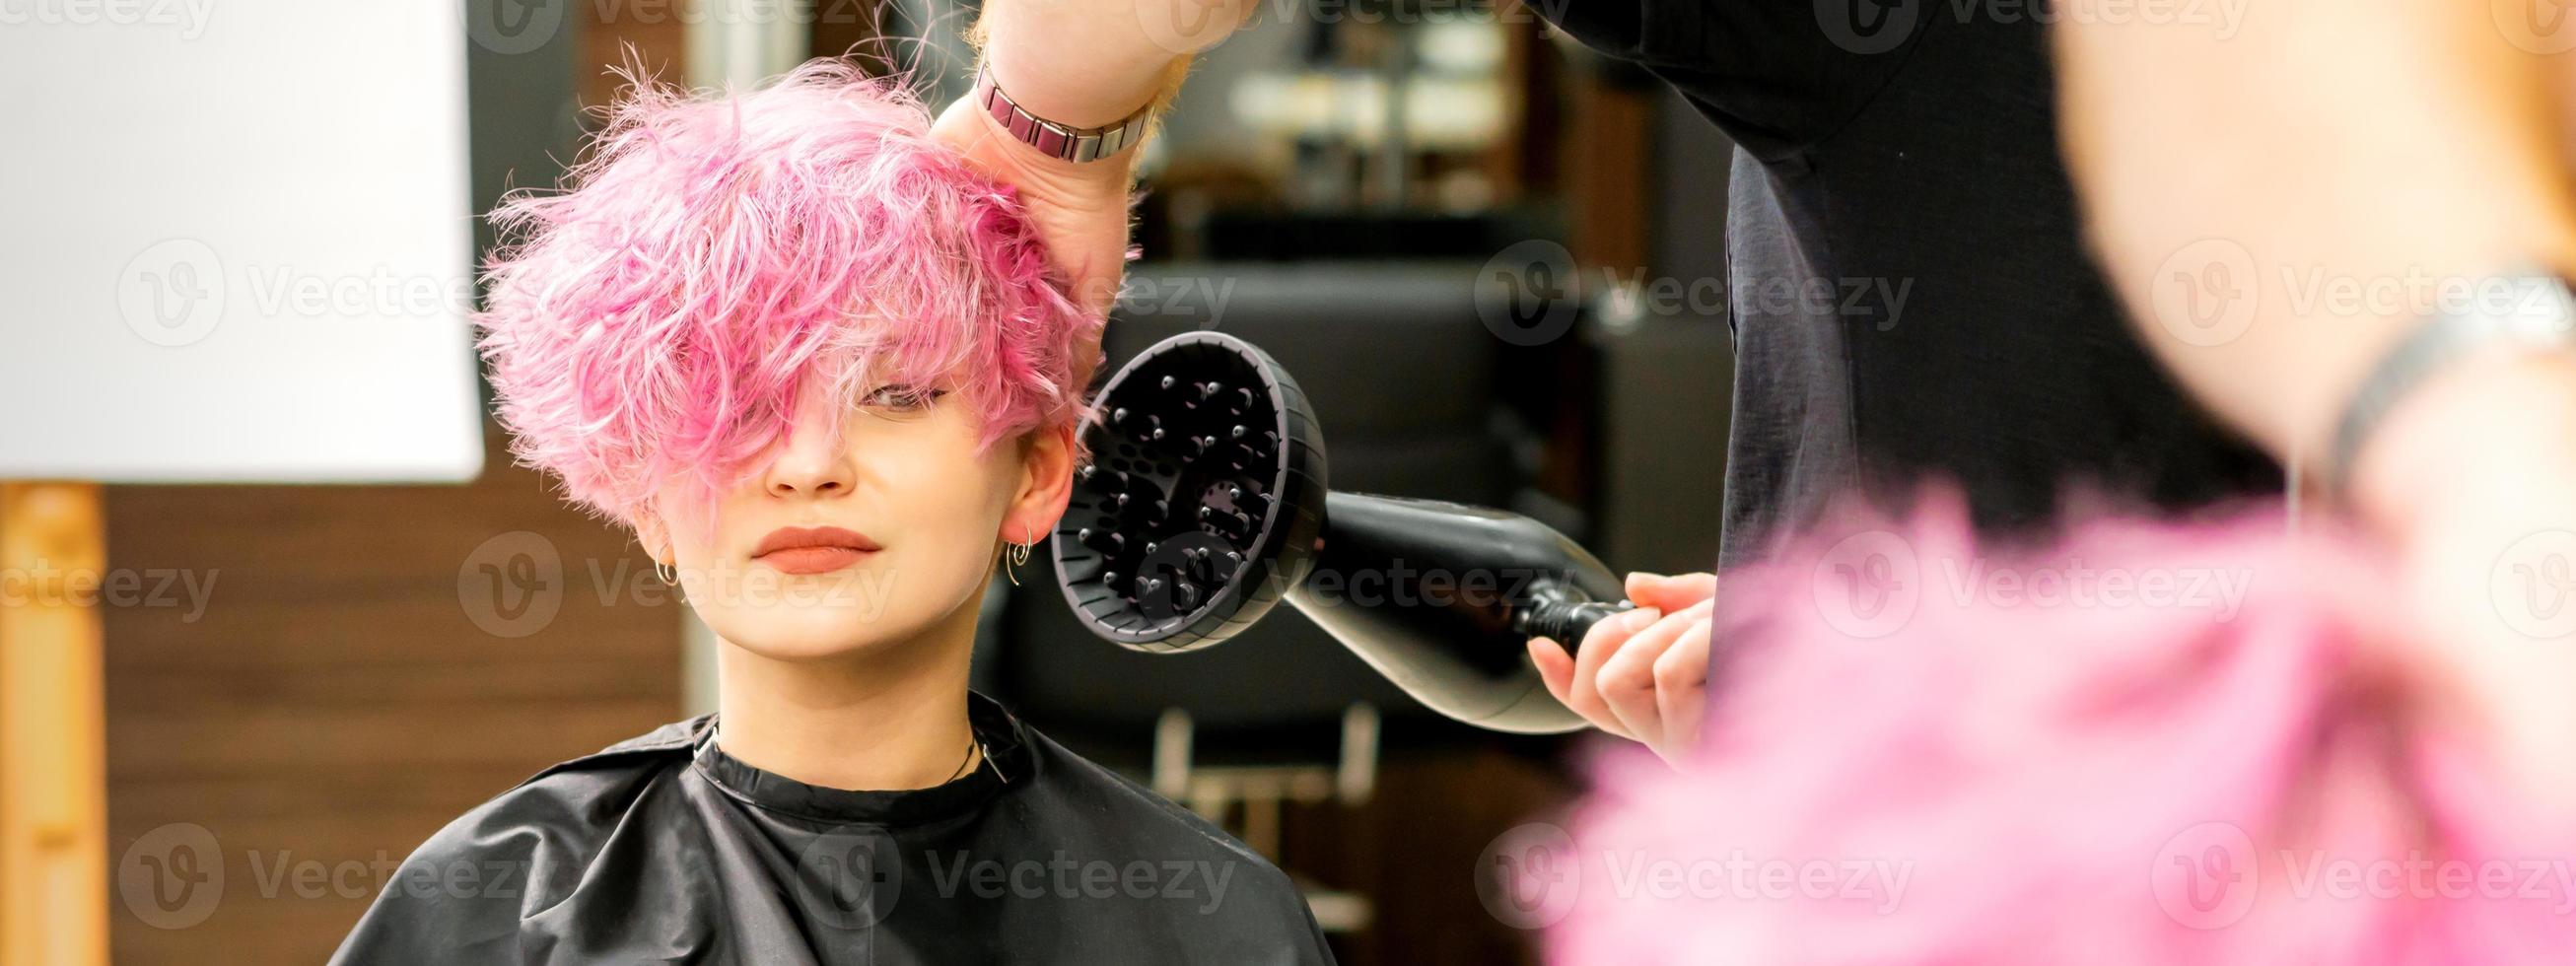 frisör torkning rosa hår av klient foto